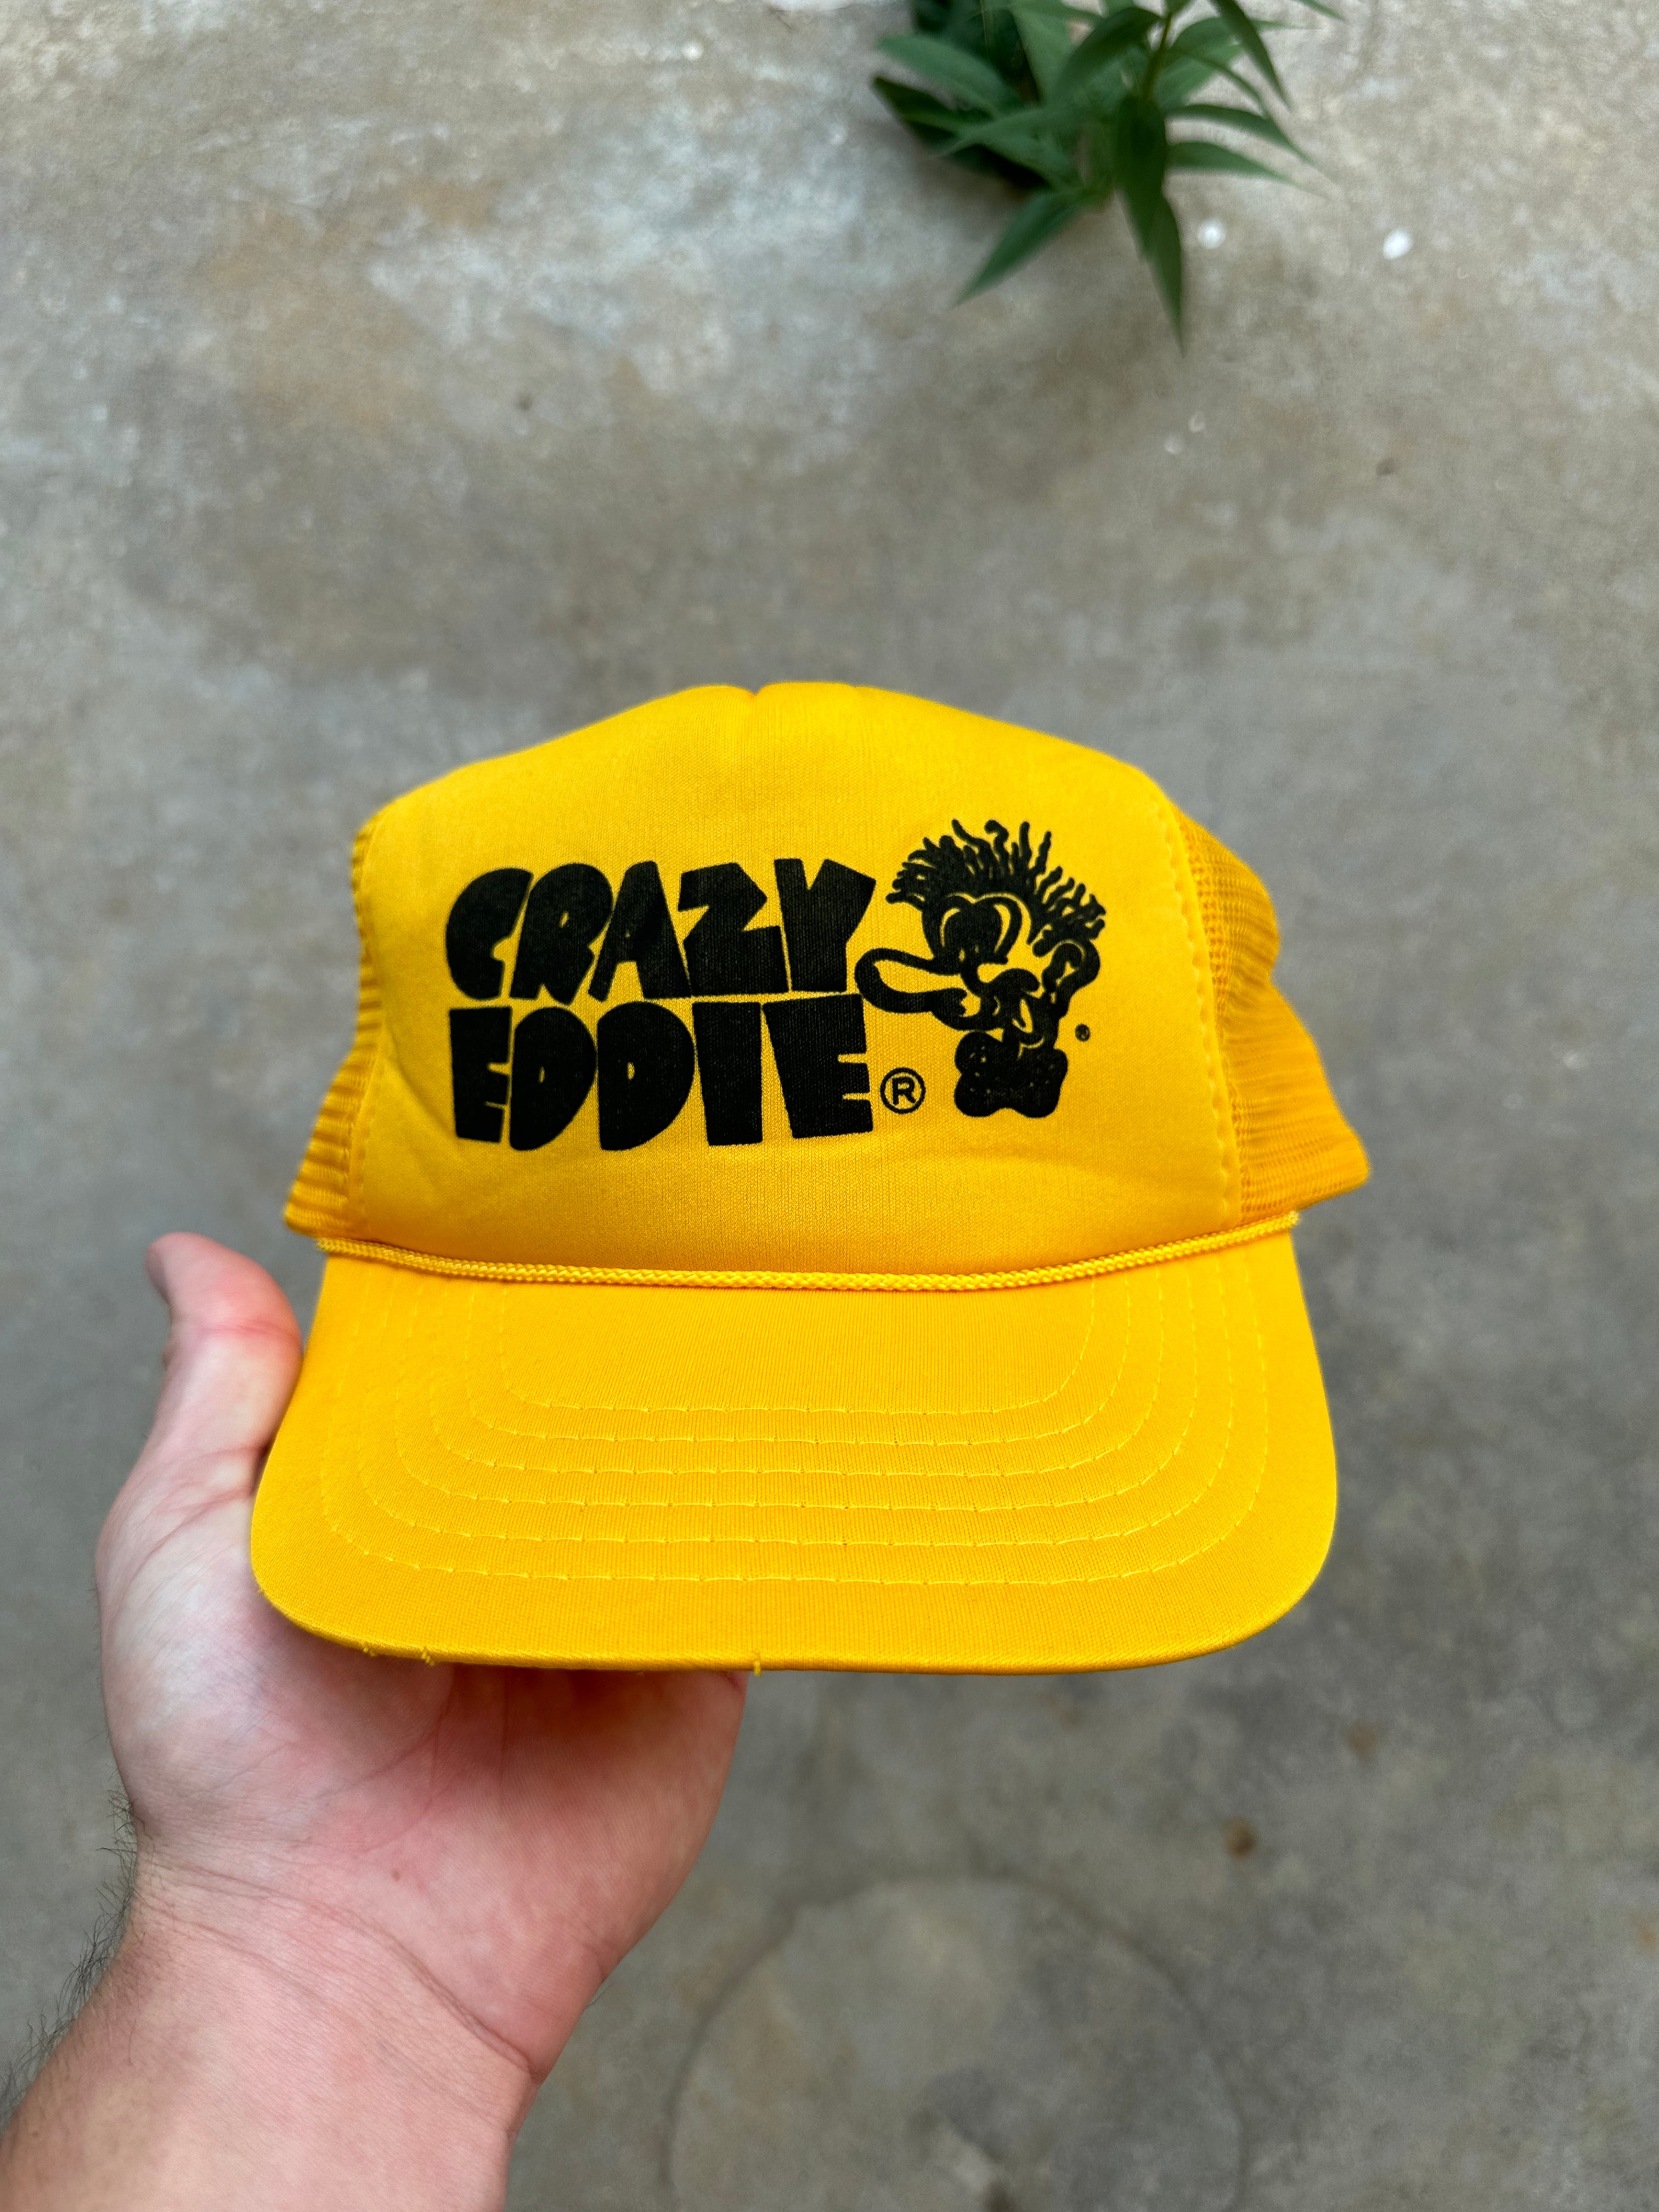 1980s Crazy Eddie Trucker Hat